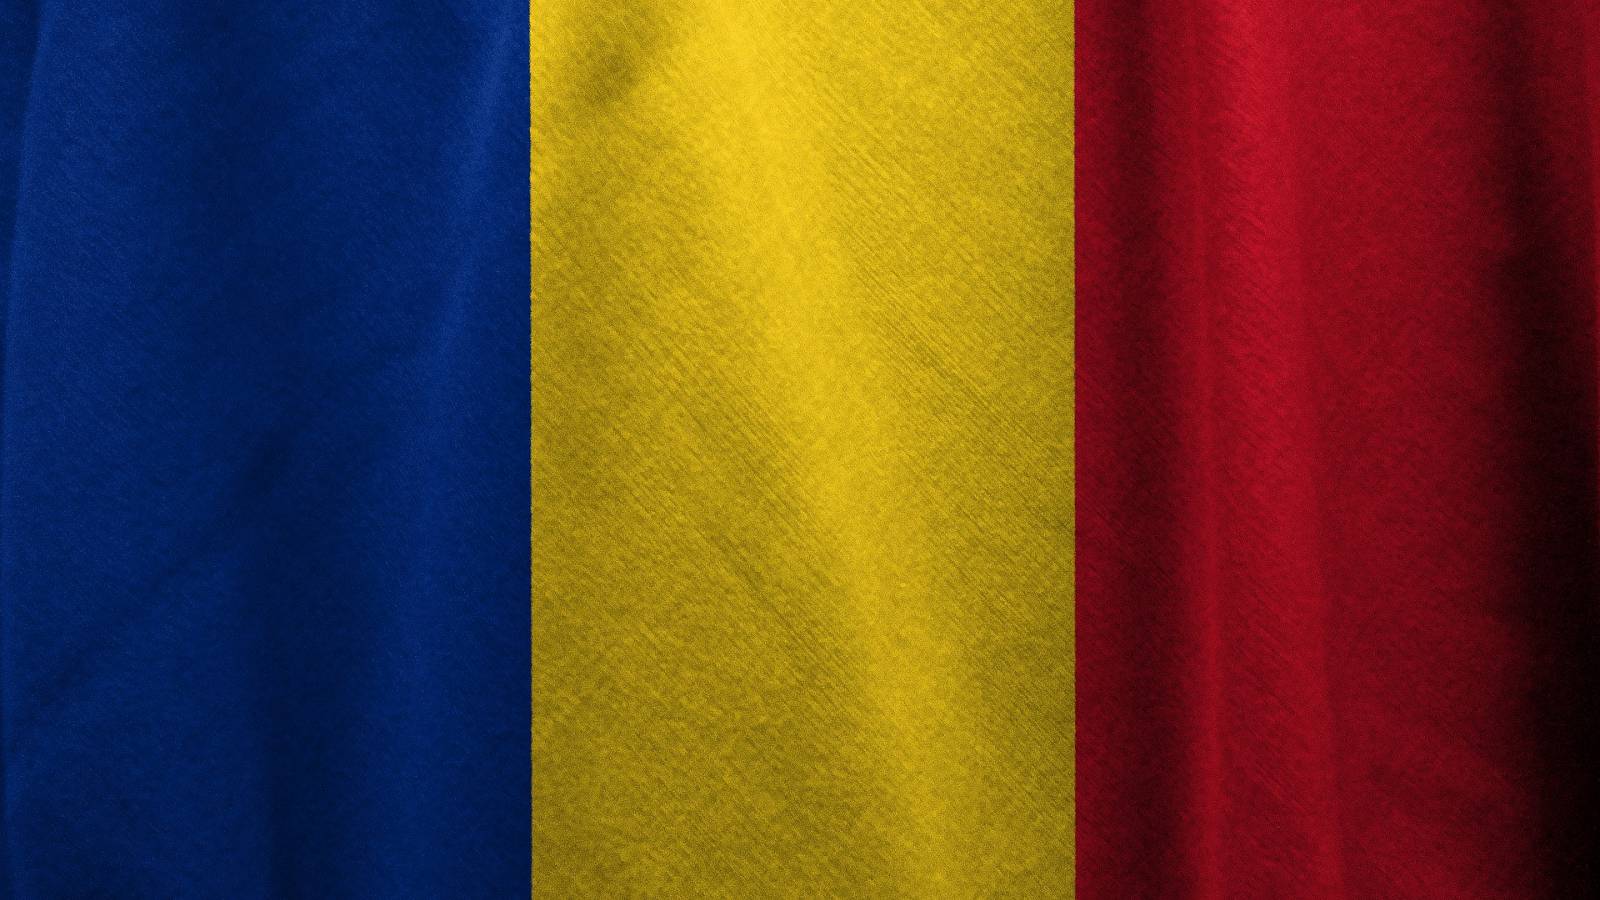 Incidenstalen fortsätter att öka i Rumänien den 14 januari 2022